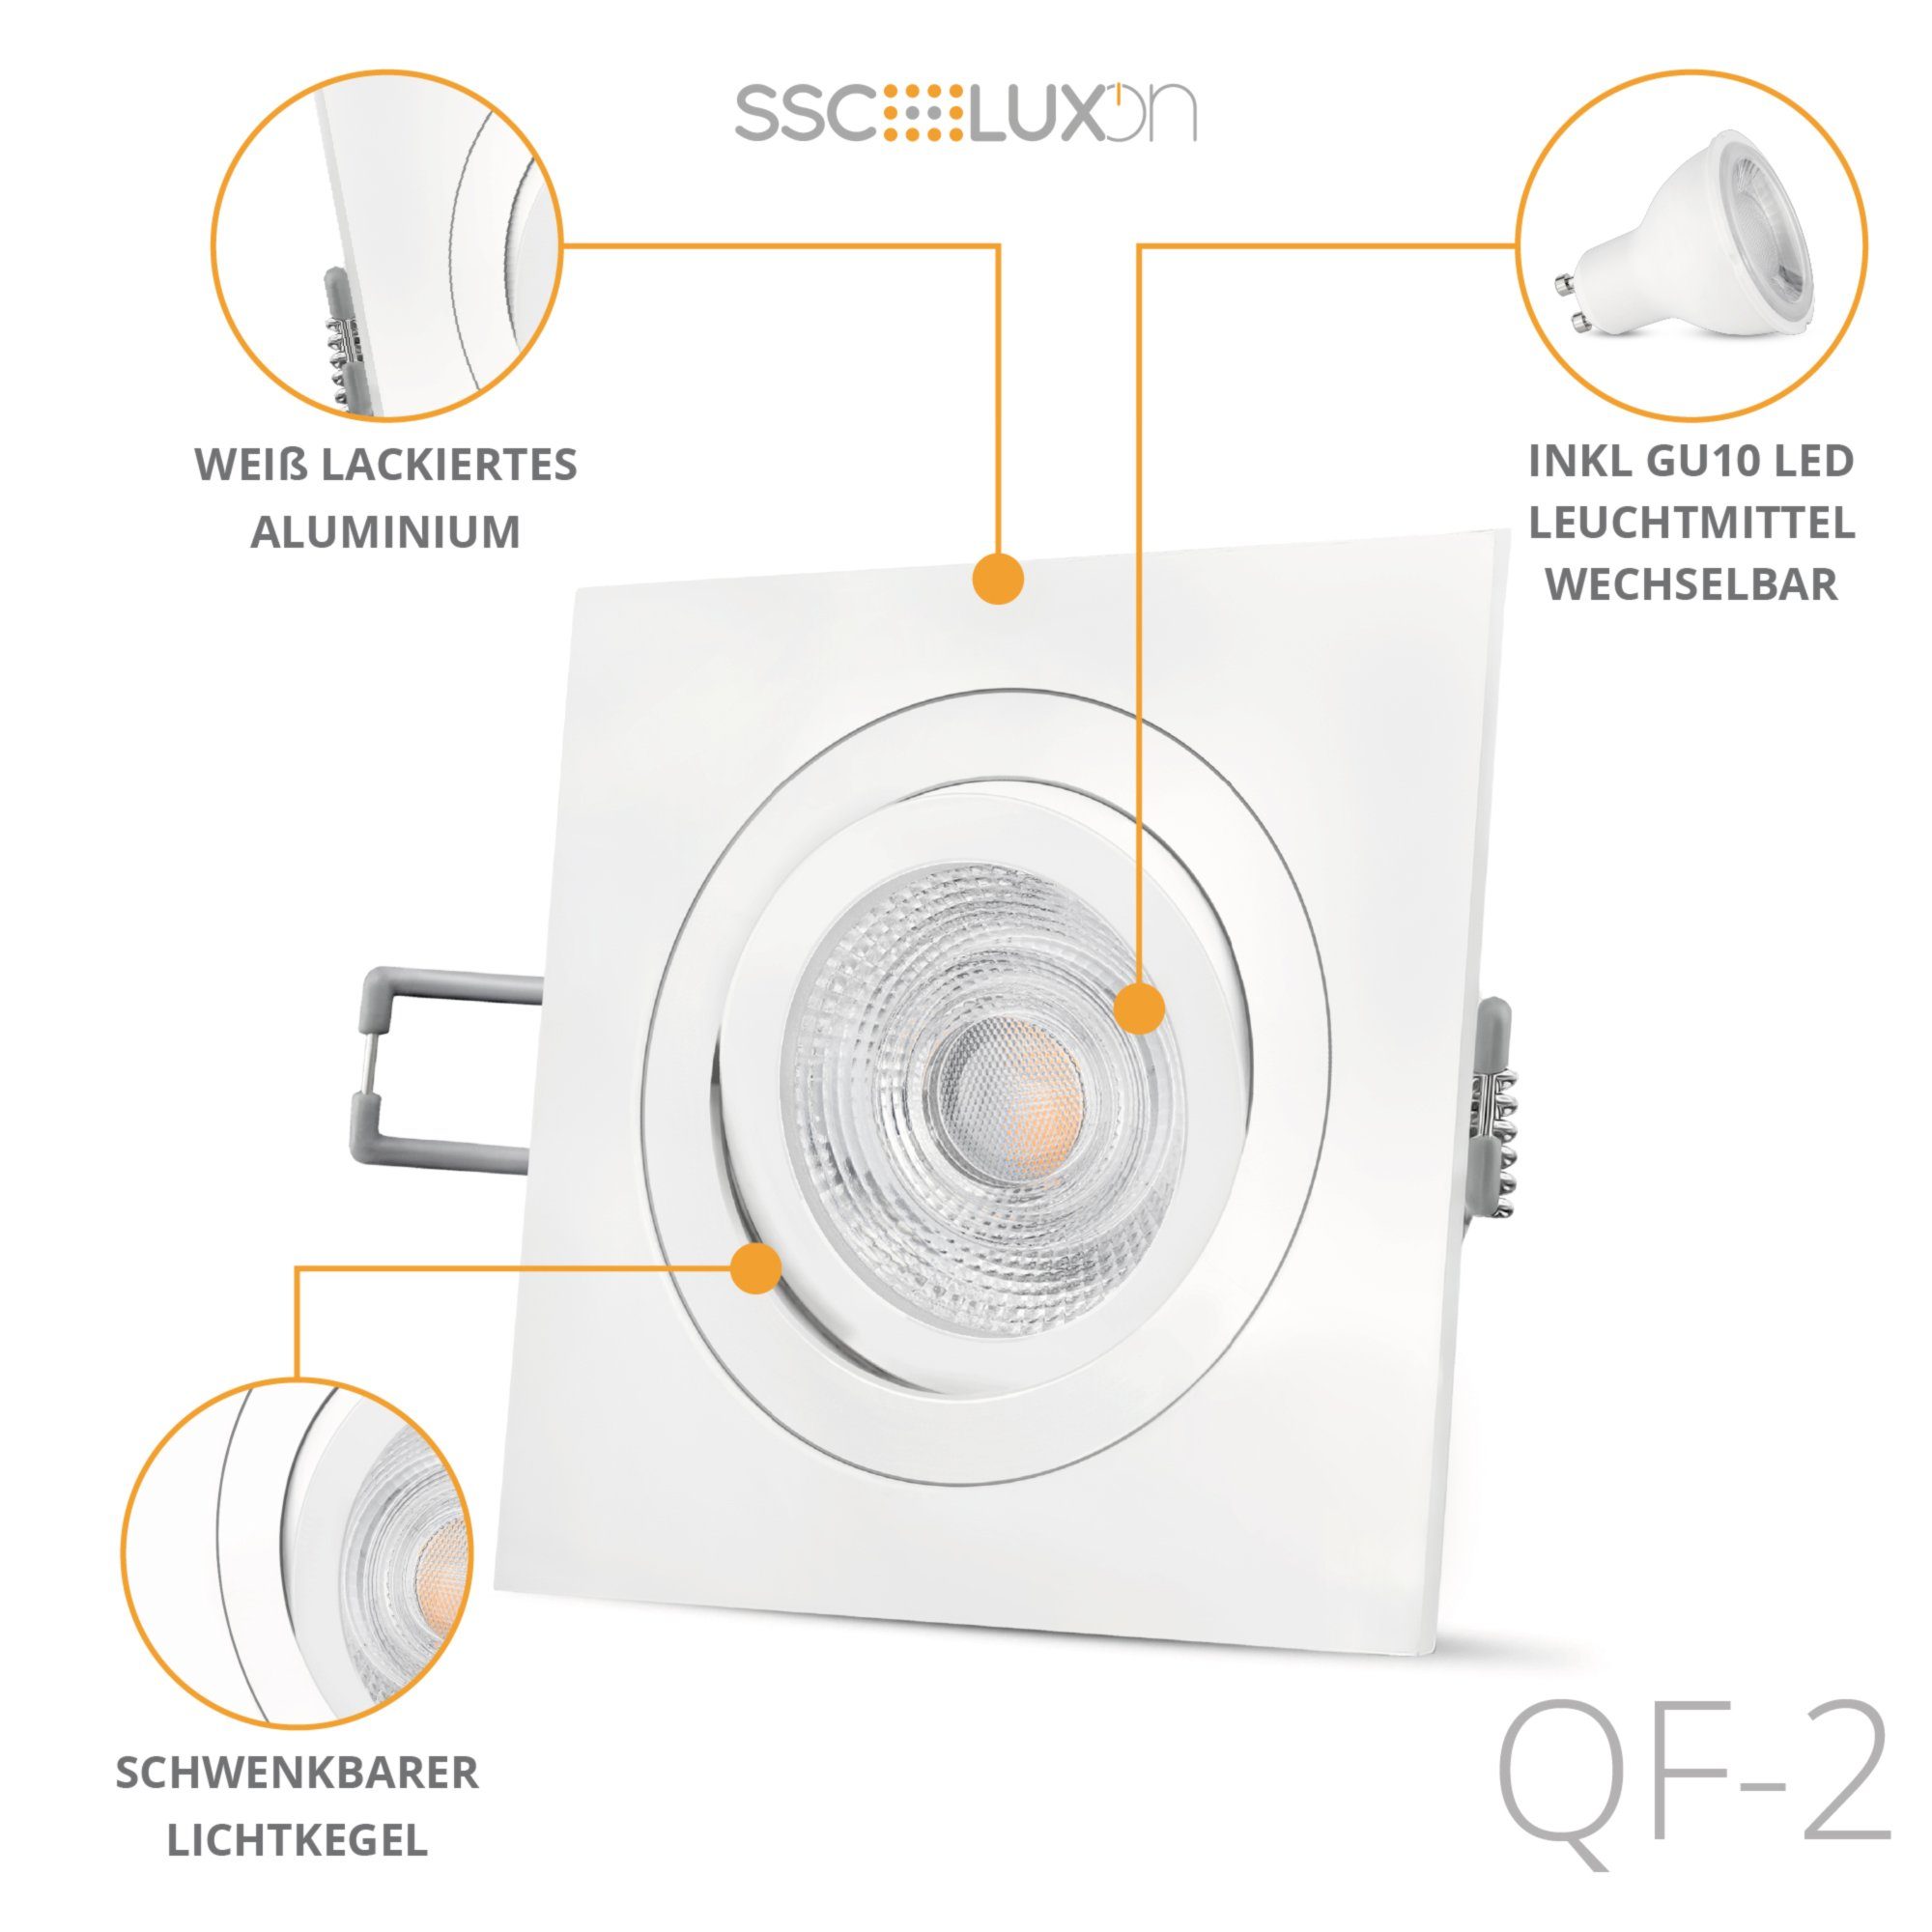 LED schwenkbar, weiss SSC-LUXon Einbaustrahler & LED matt Einbaustrahler quadratischer Warmweiß QF-2